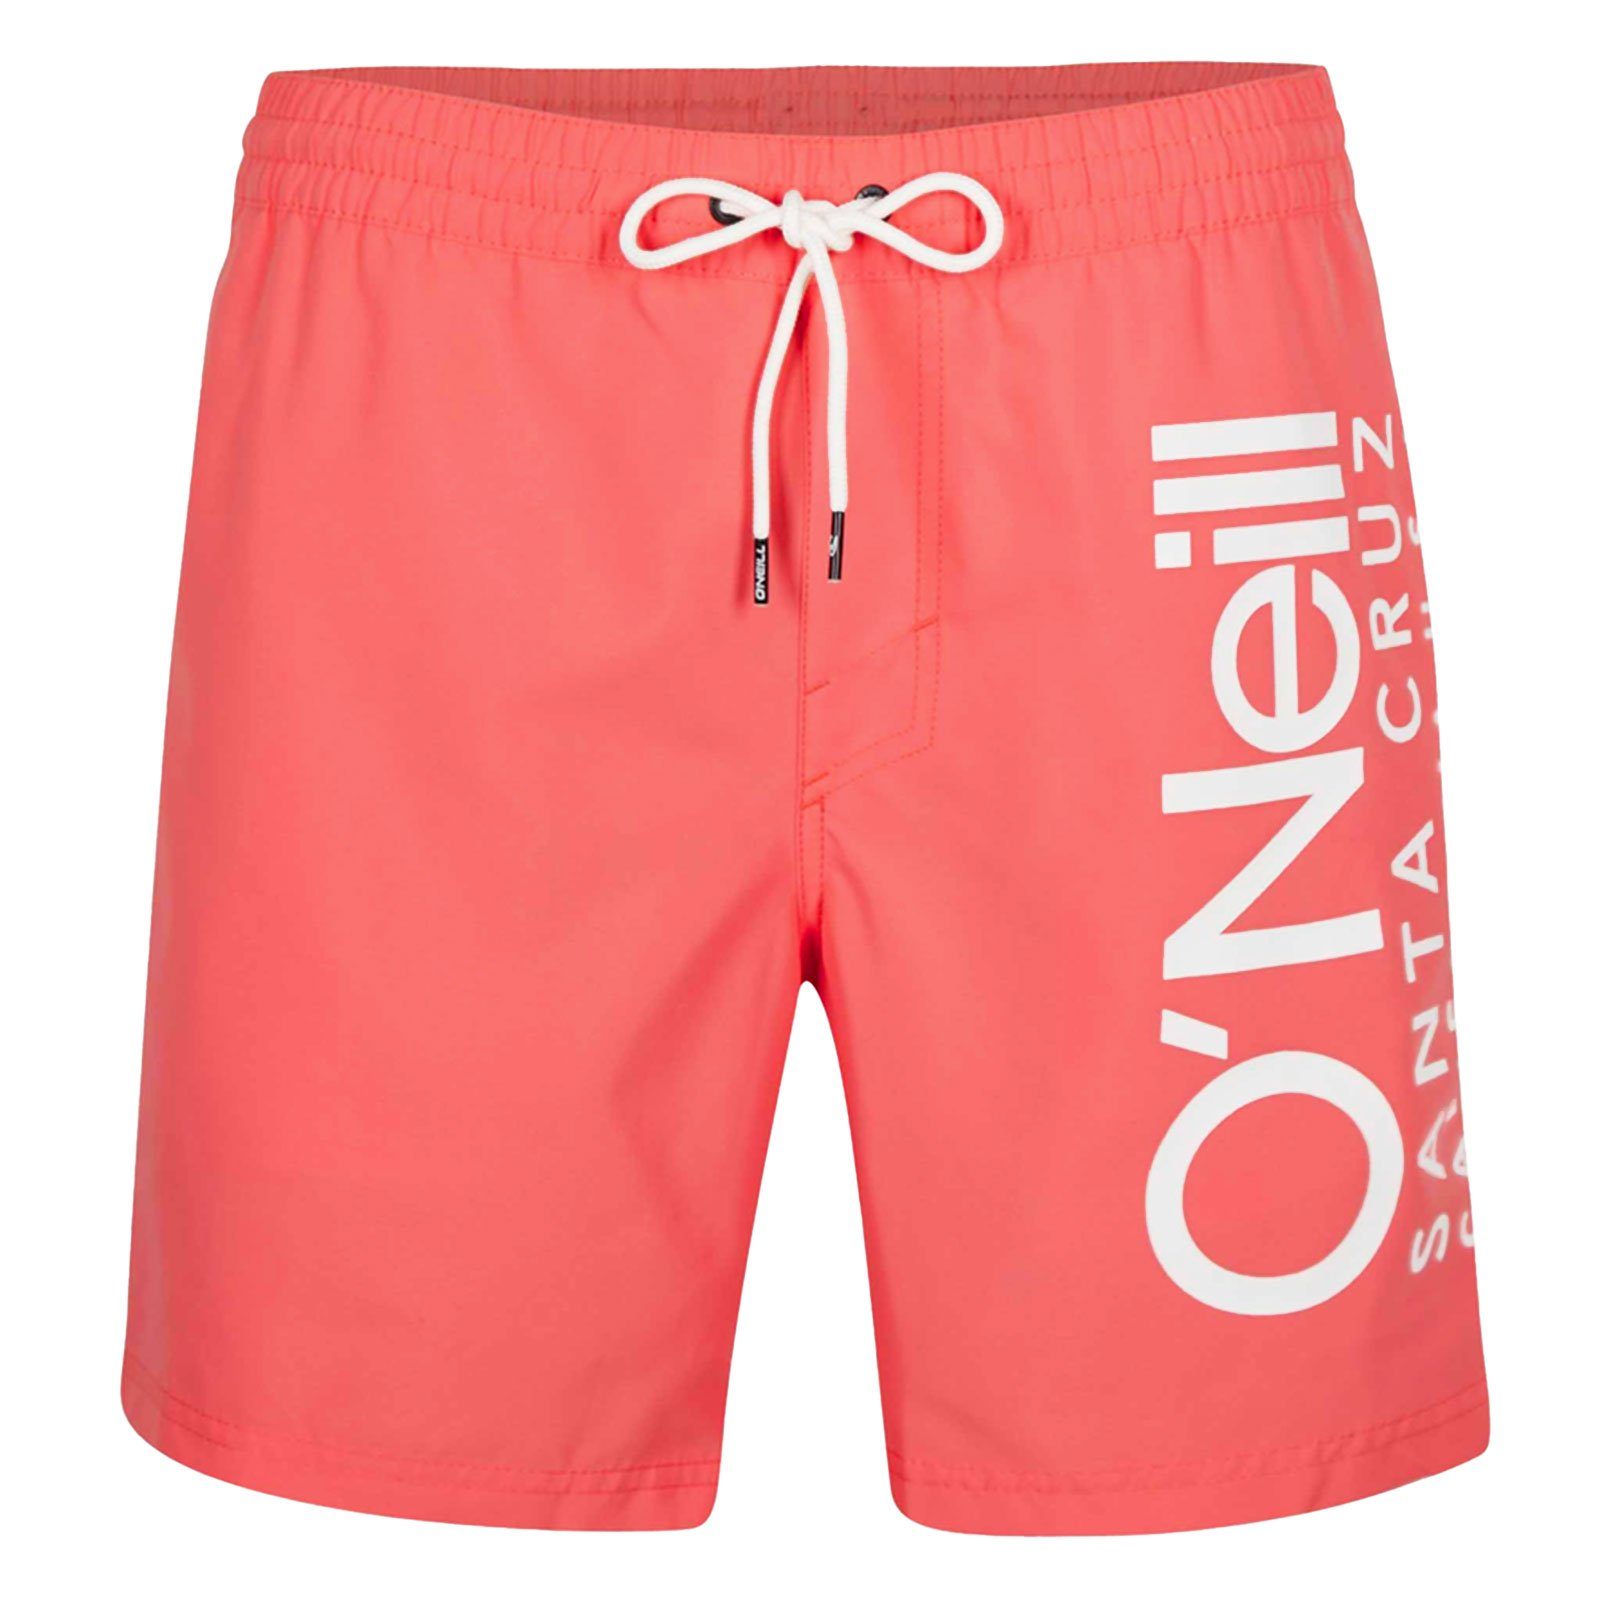 O'Neill Badeshorts PM Original Cali Shorts mit vertikalen Markenschriftzug 14022 georgia beach